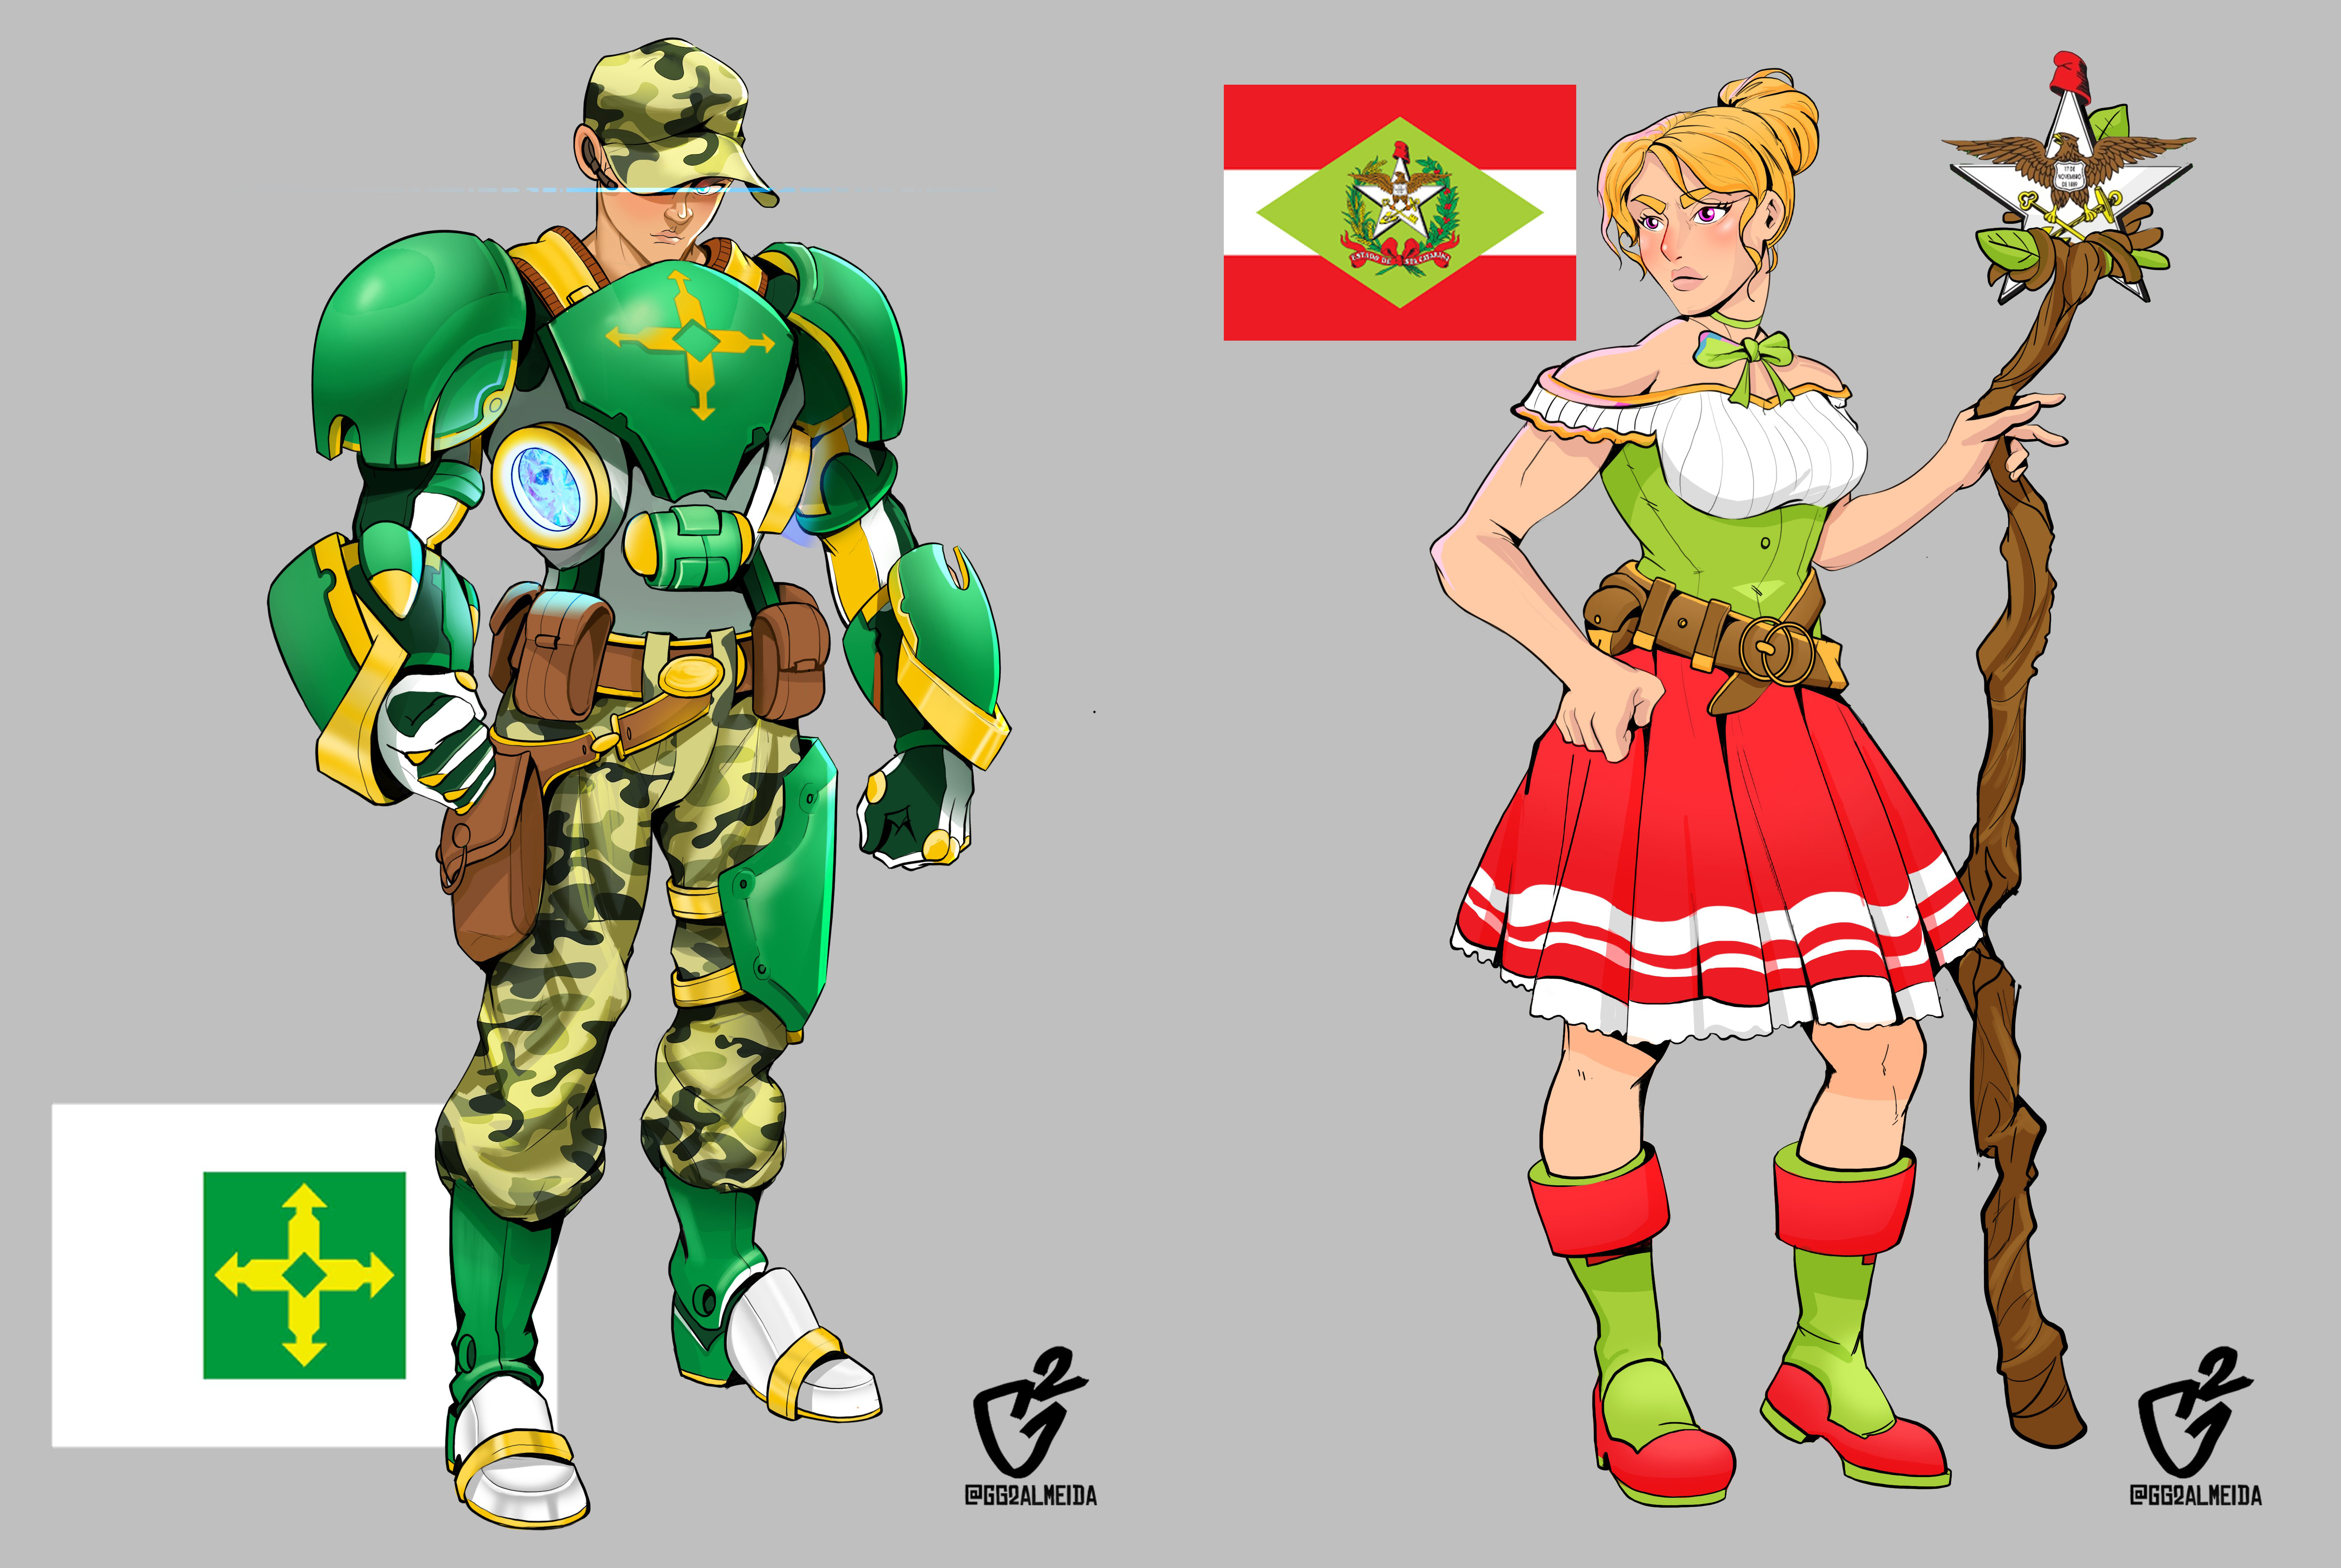 Personagens brasileiros nos jogos de luta!